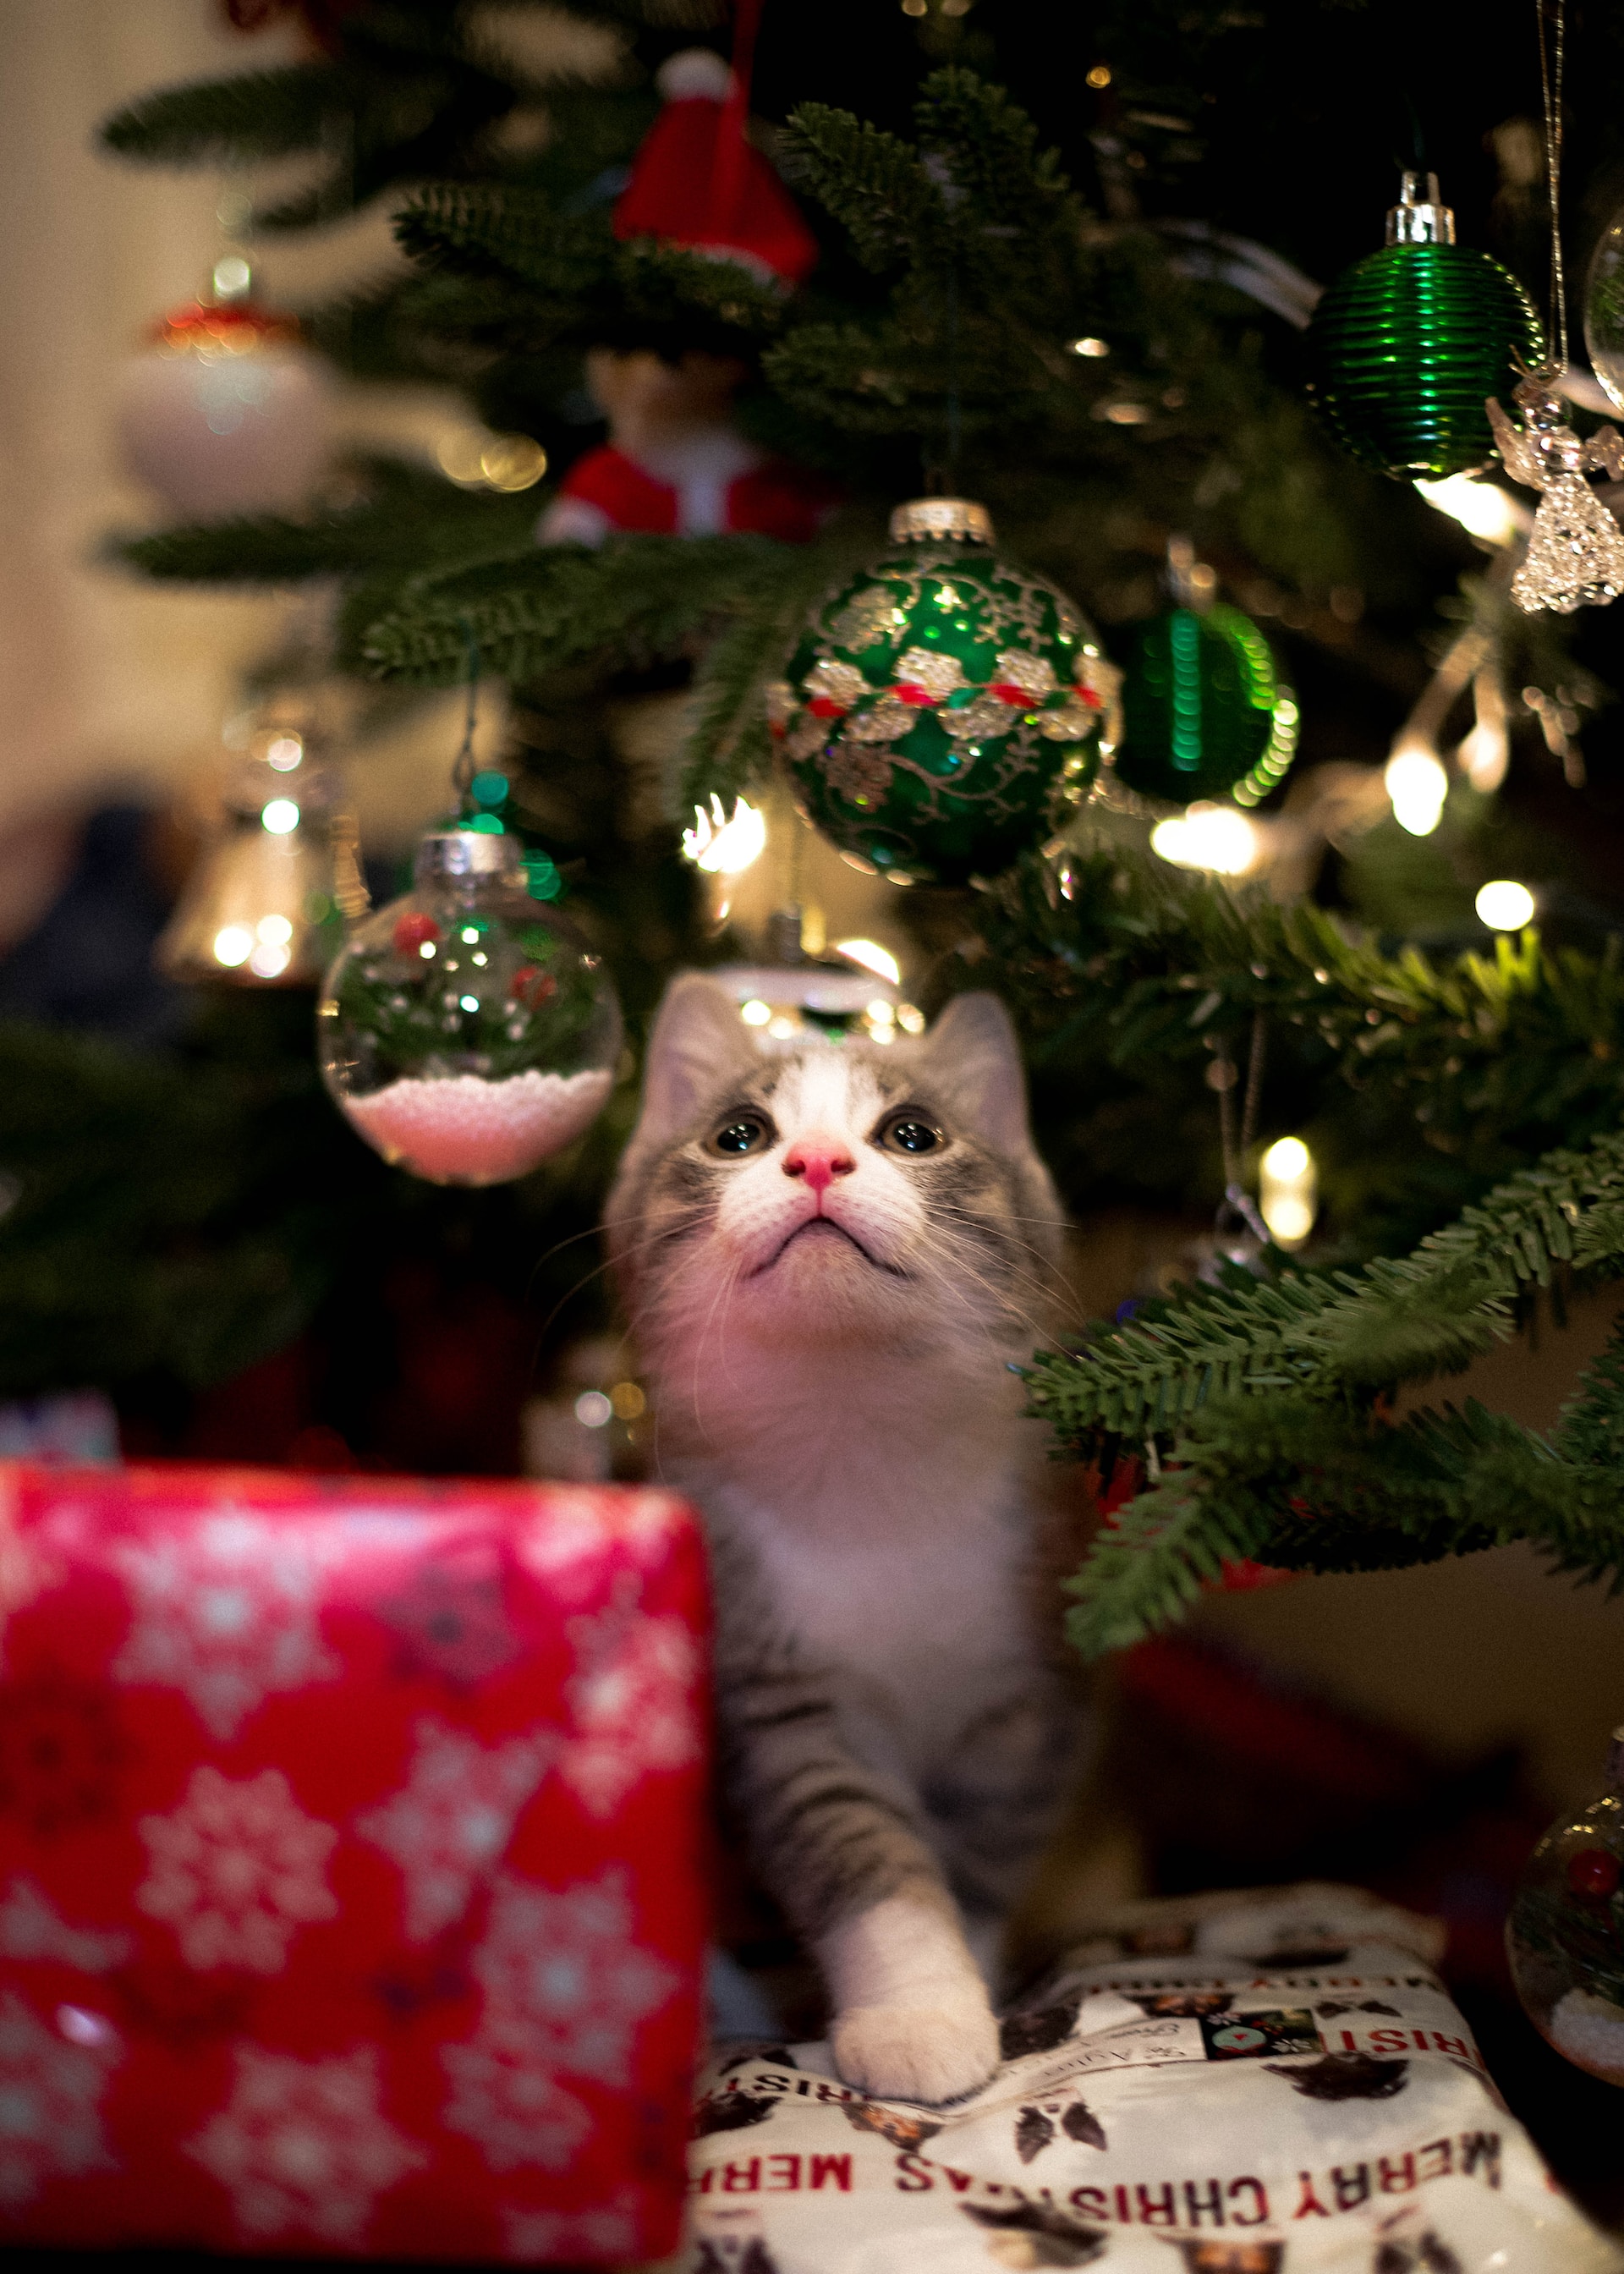  Γάτα vs χριστουγεννιάτικο δέντρο: Φέτος κράτησε το δέντρο σου ασφαλές από χνουδωτό «τερατάκι»